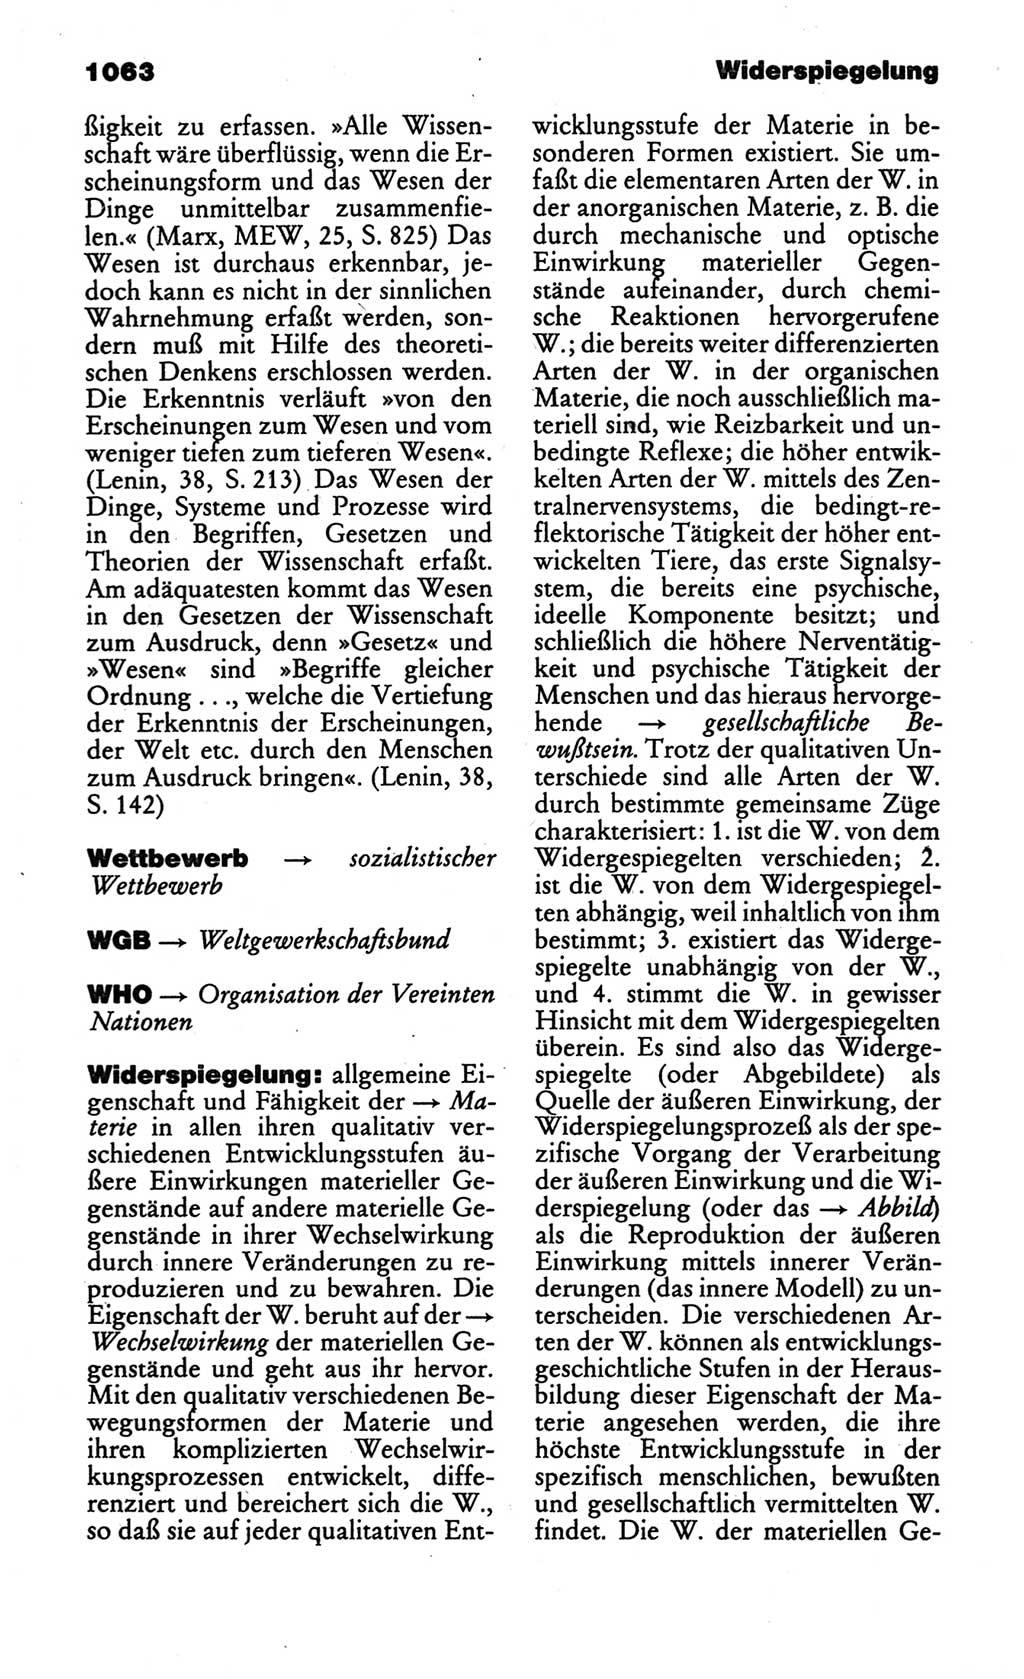 Kleines politisches Wörterbuch [Deutsche Demokratische Republik (DDR)] 1986, Seite 1063 (Kl. pol. Wb. DDR 1986, S. 1063)